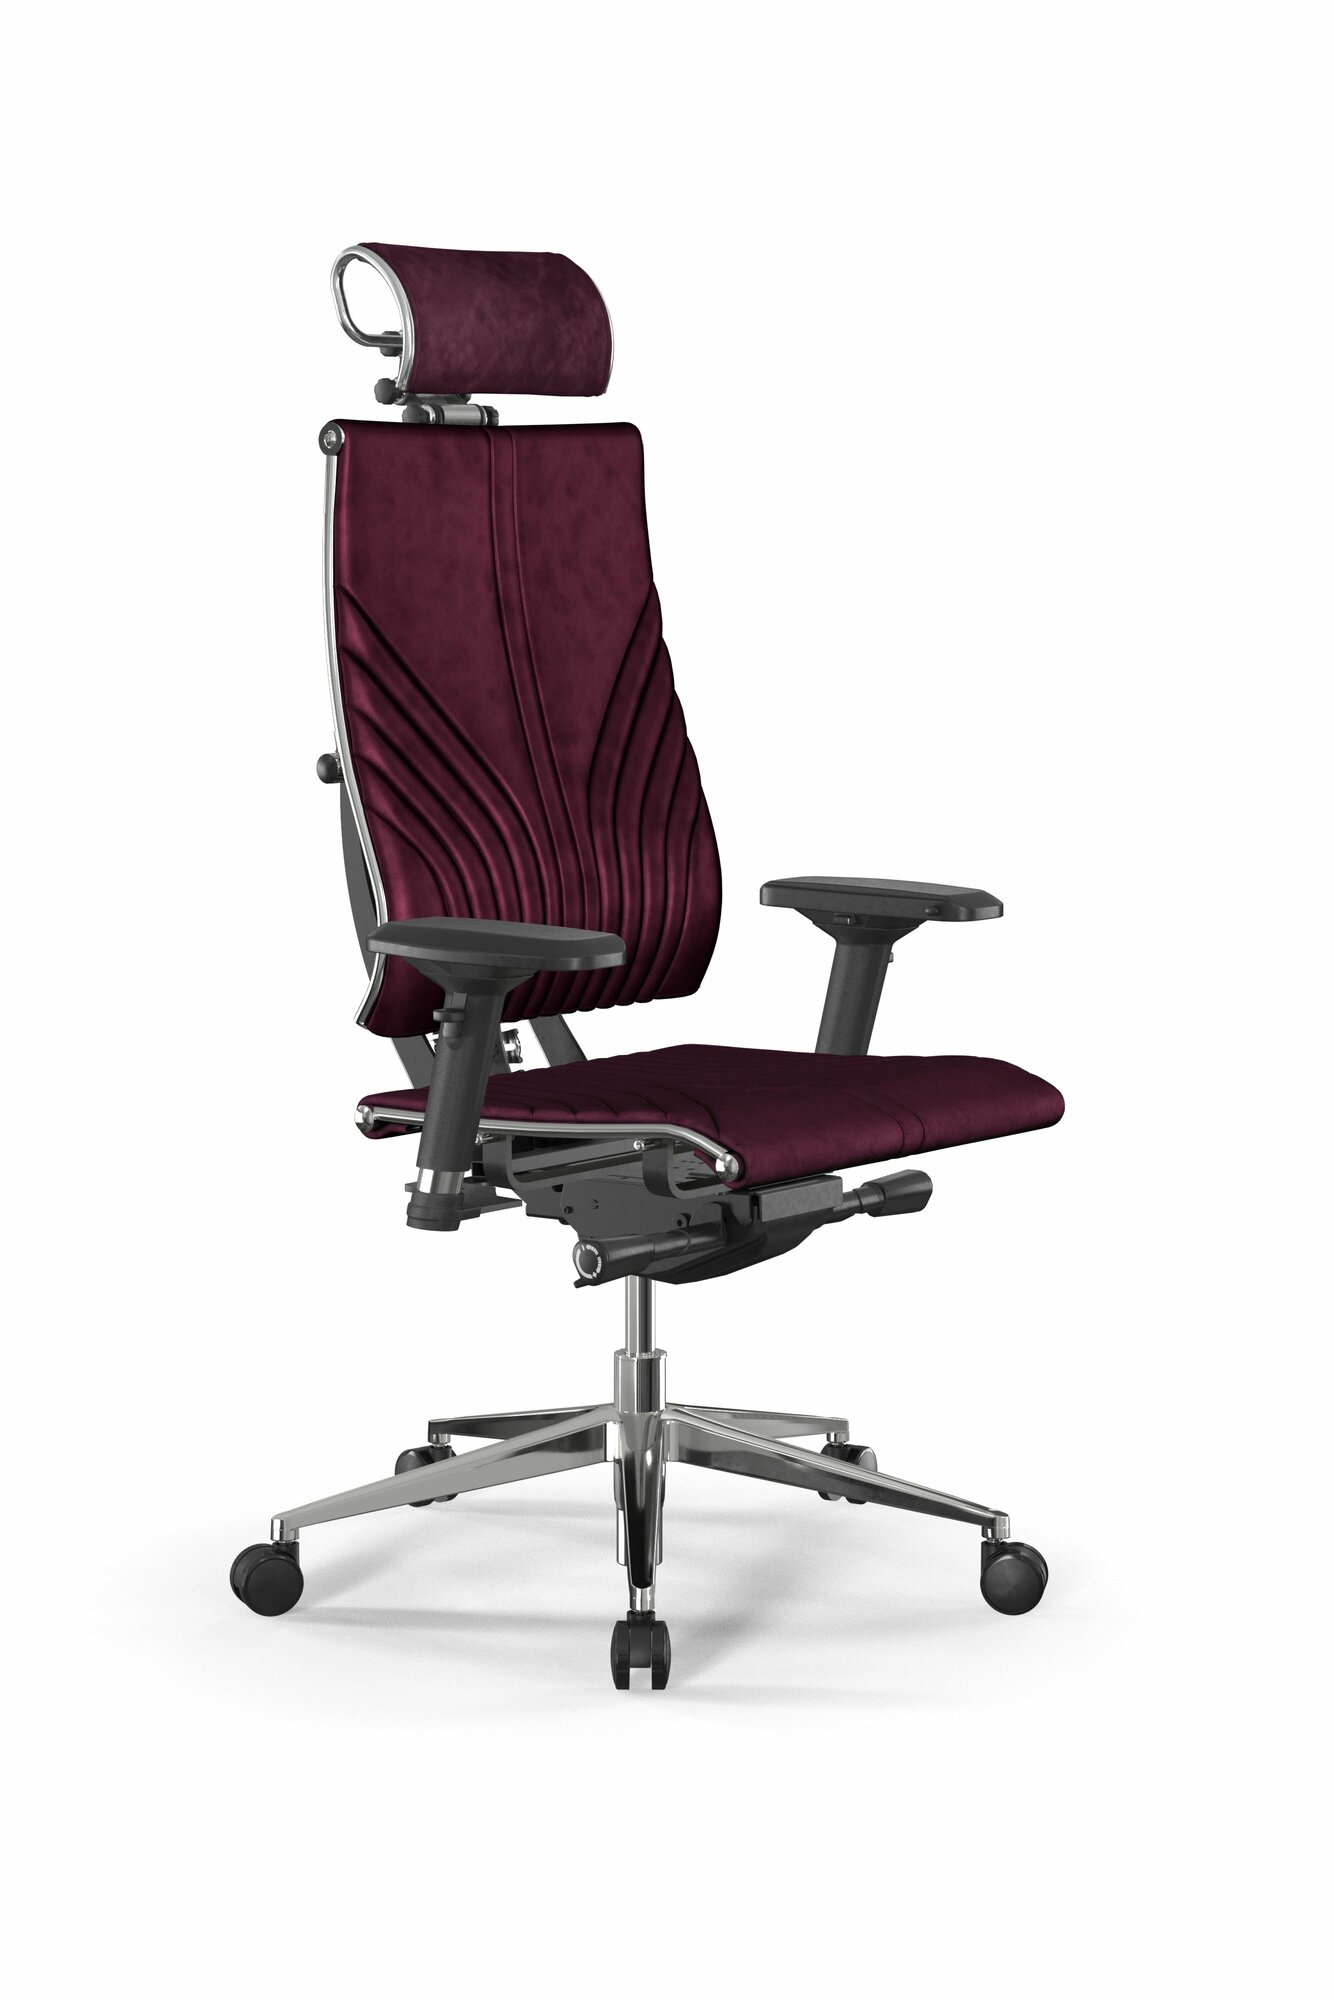 Позвоночное кресло метта Y 4DF B2-12D - GoyaLE /Kc31/Nc31/D04P/H2cV-3D(M26. B32. G25. W03) (Фиолетовый)